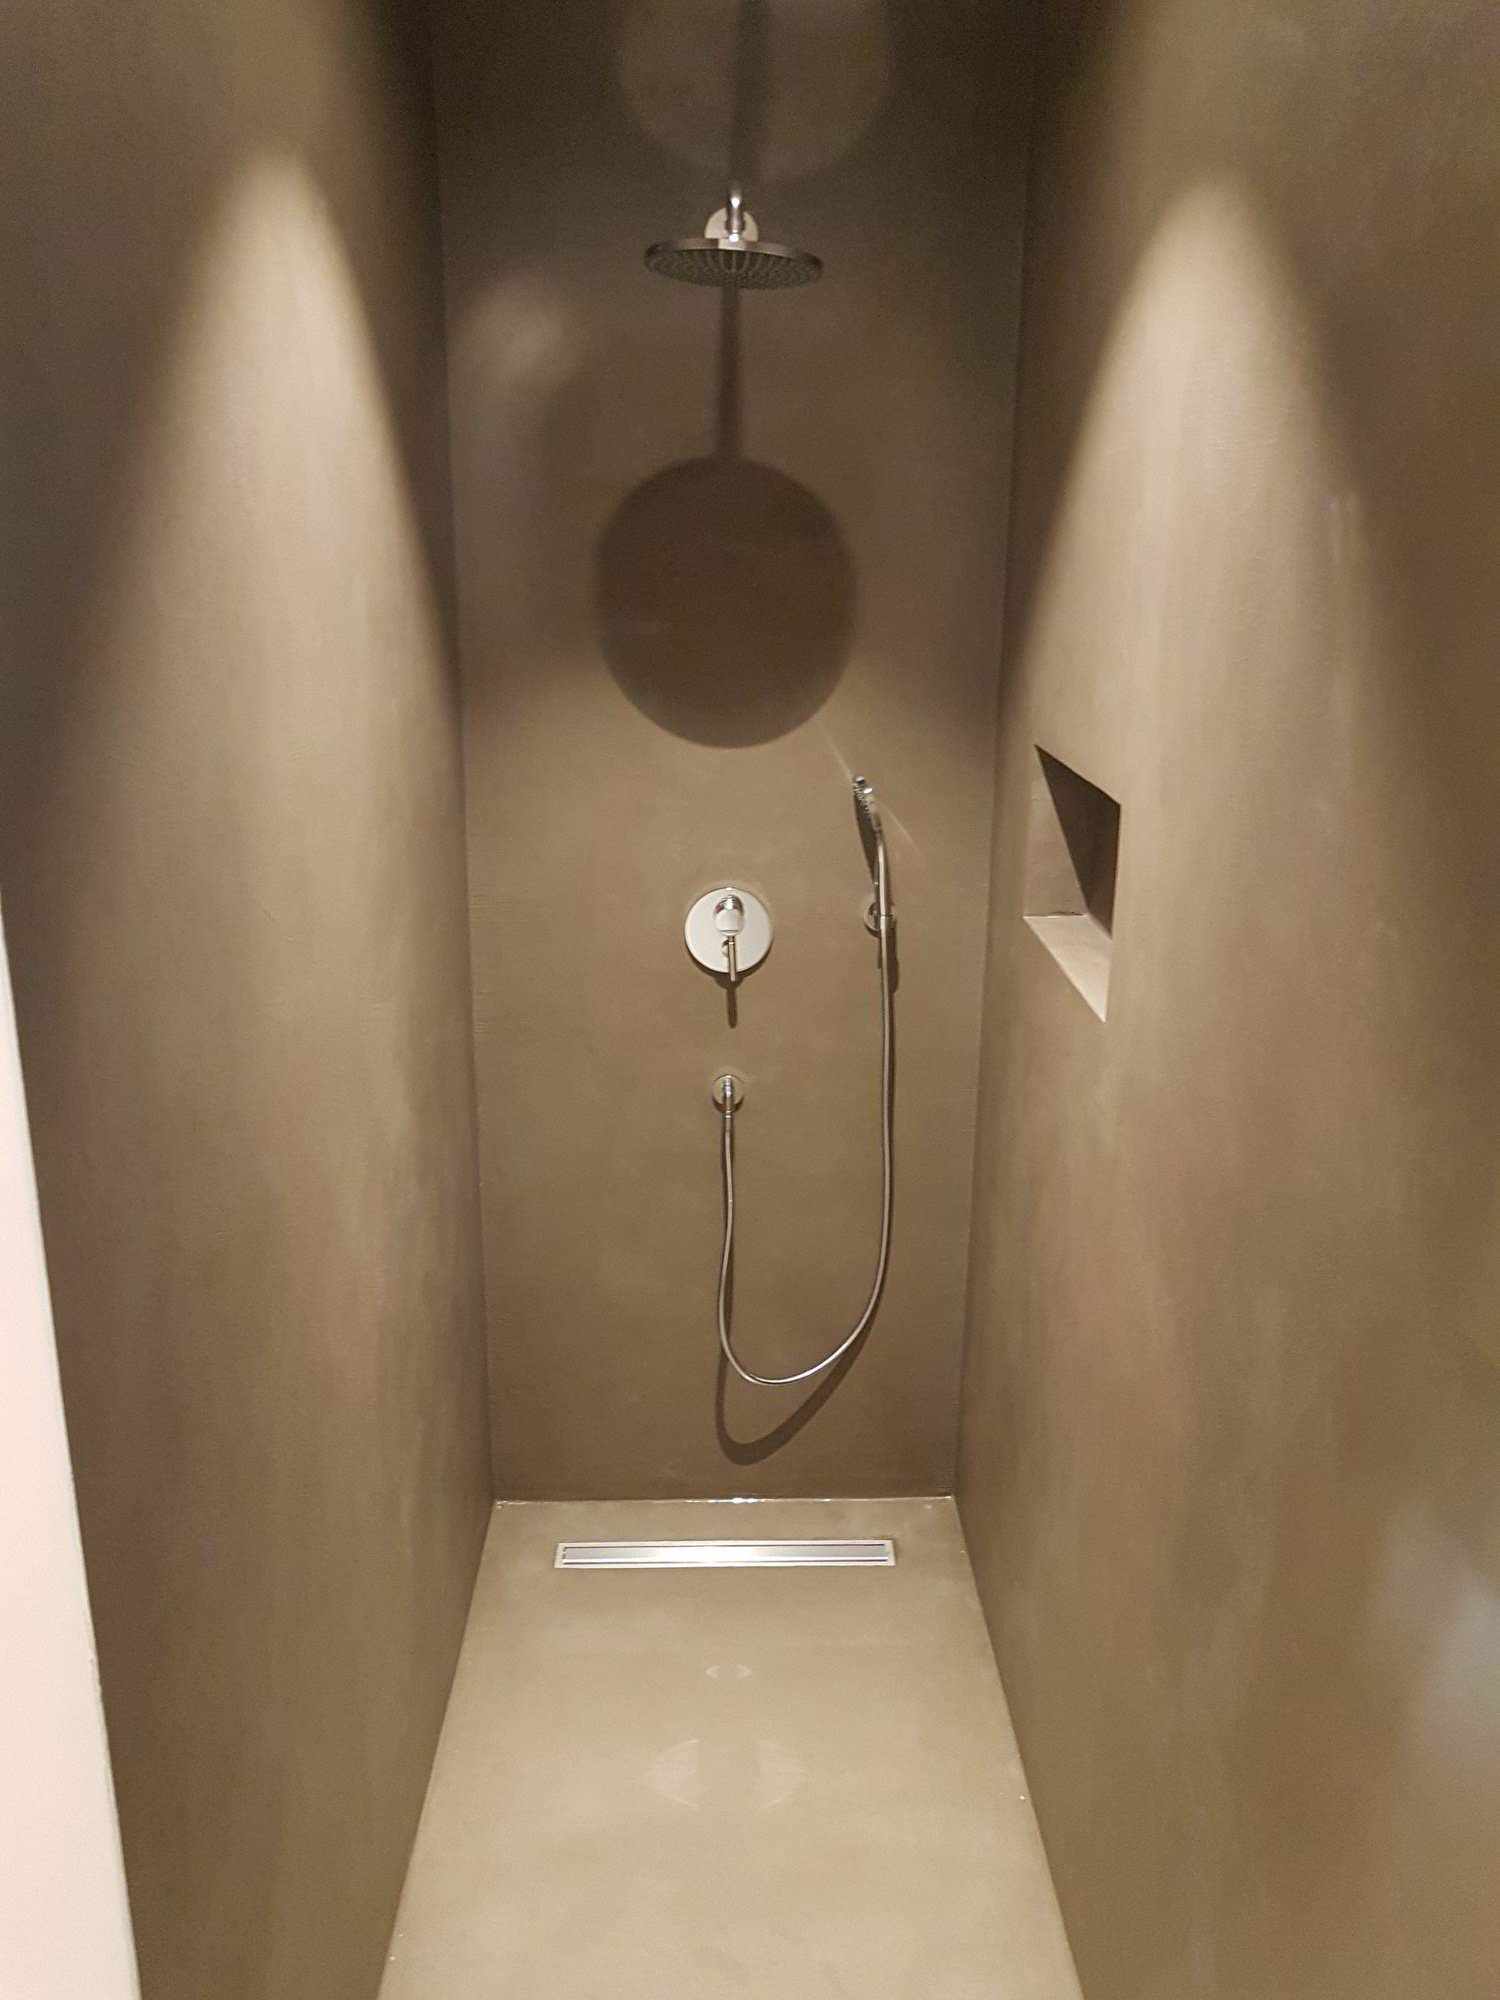 Lekkie pokrycie mikrocementem ścian i podłogi prysznica